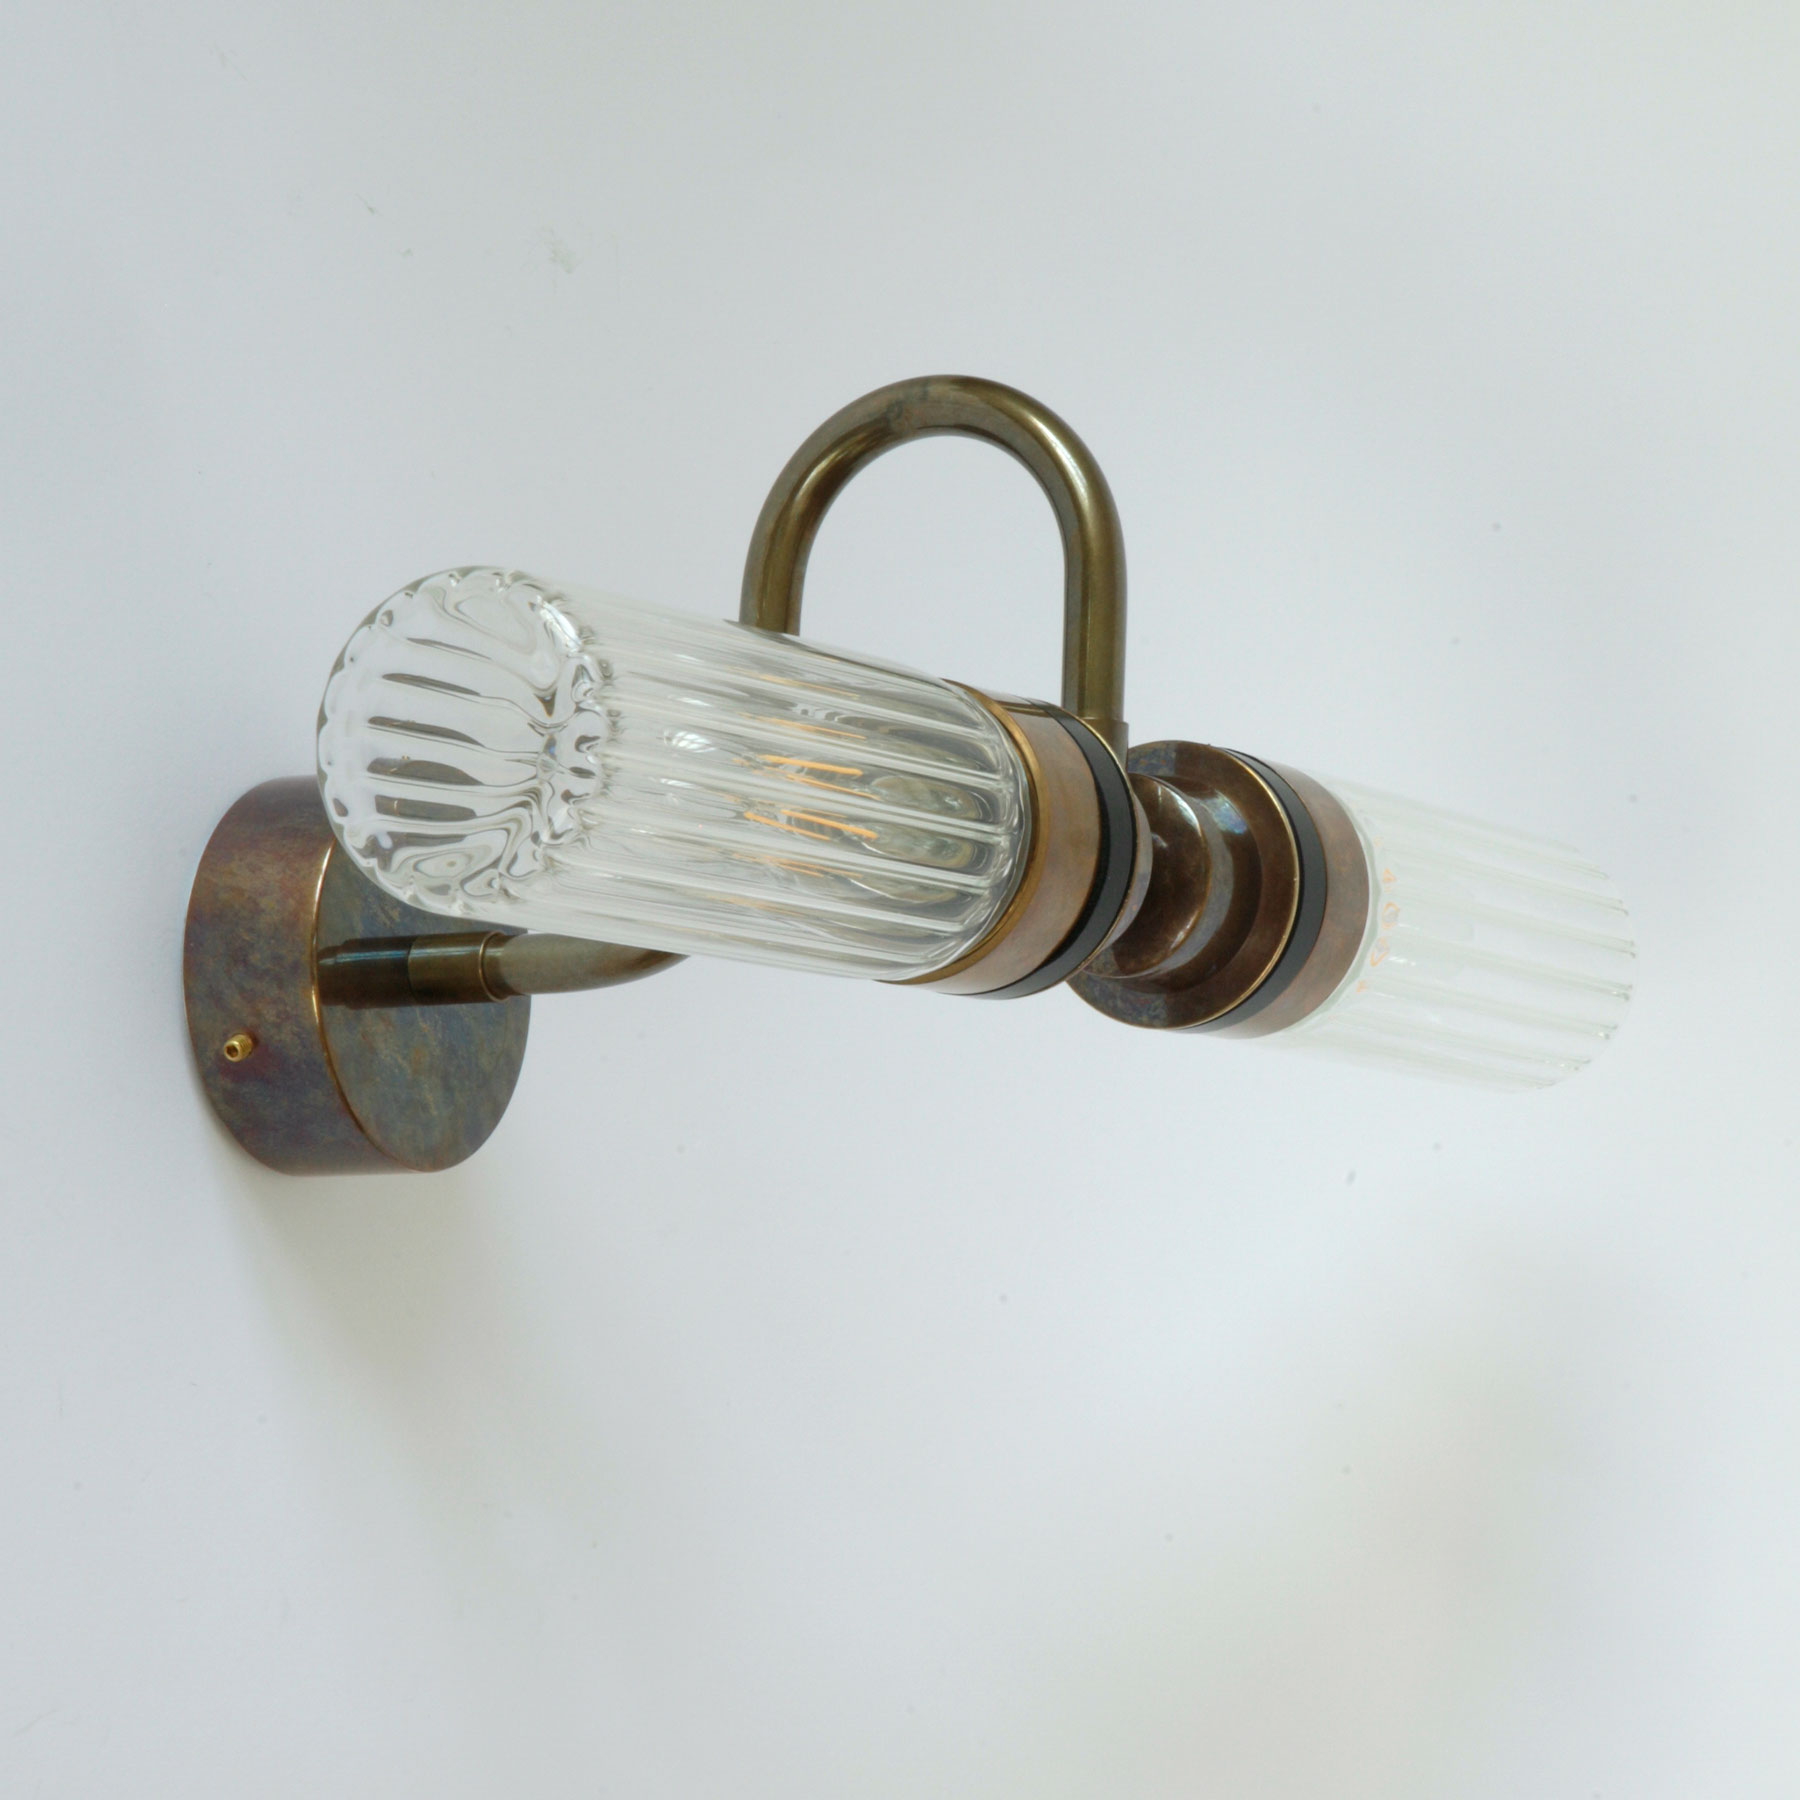 Doppel-Wandeuchte für Bad-Spiegel (klares oder prismatisches Glas), IP65: Badezimmer-Wandlampe mit zwei Glaskolben (hier prismatisches Glas, Alt-Messing patiniert)